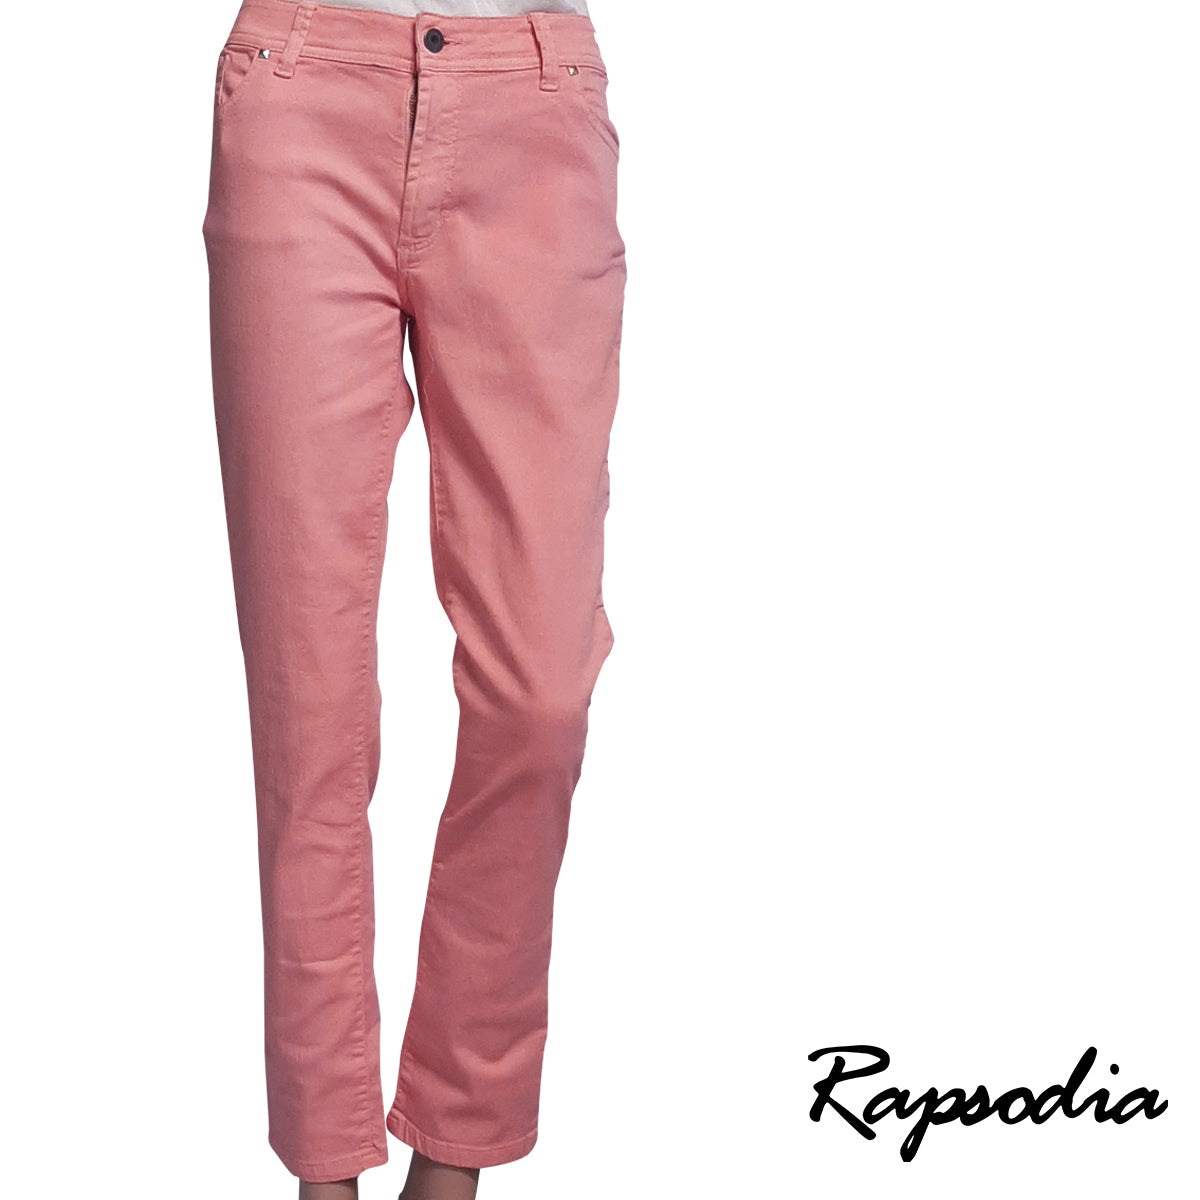 Jeans Rapsodia Queen Pigment Dye Rosa